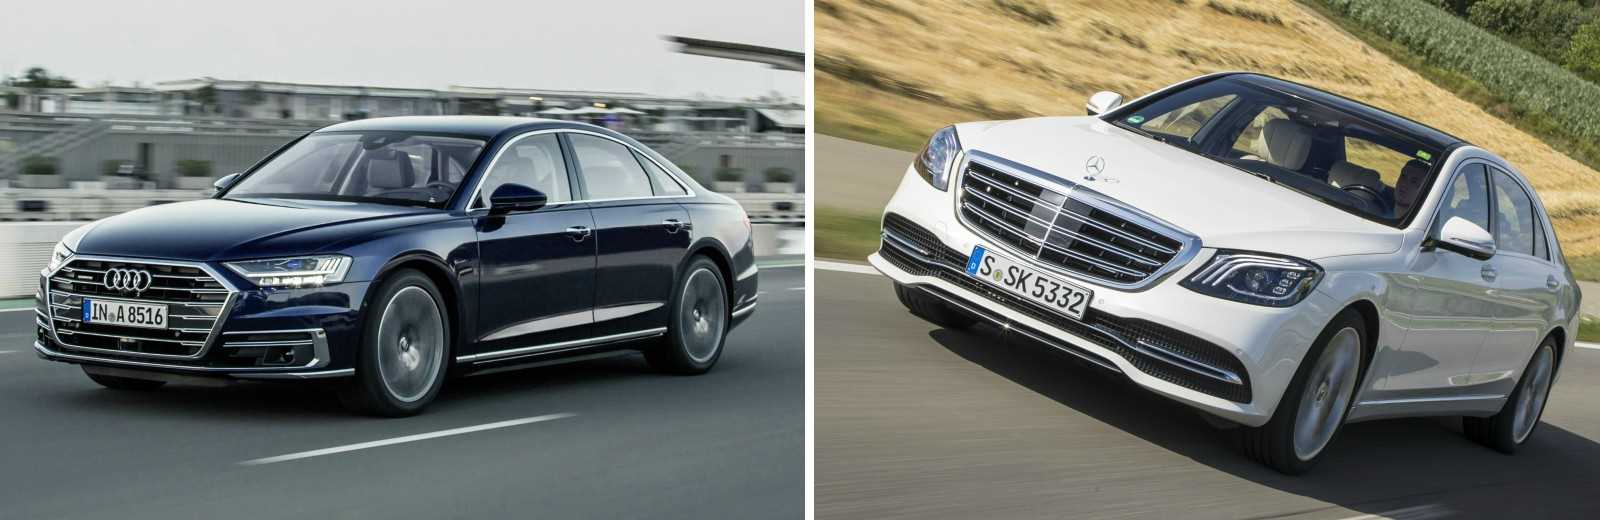 Audi A8 vs. Mercedes-Benz S-Klasse Limousine 2018 (vergelijking)